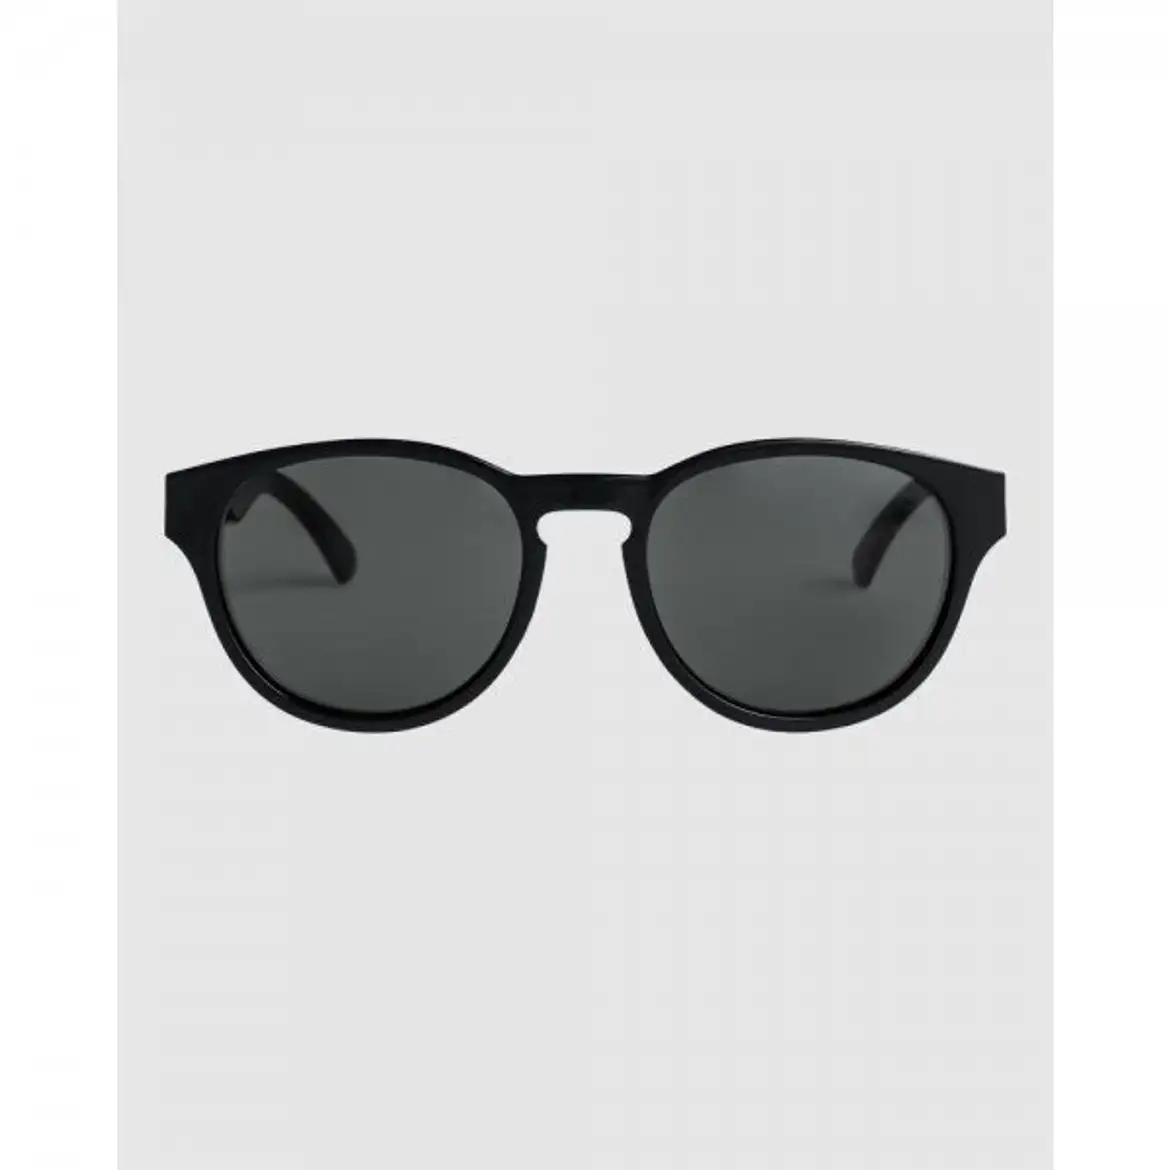 퀵실버-3889582 Quiksilver For - Eliminator | 트렌비 Sunglasses Men BLACK/GREY